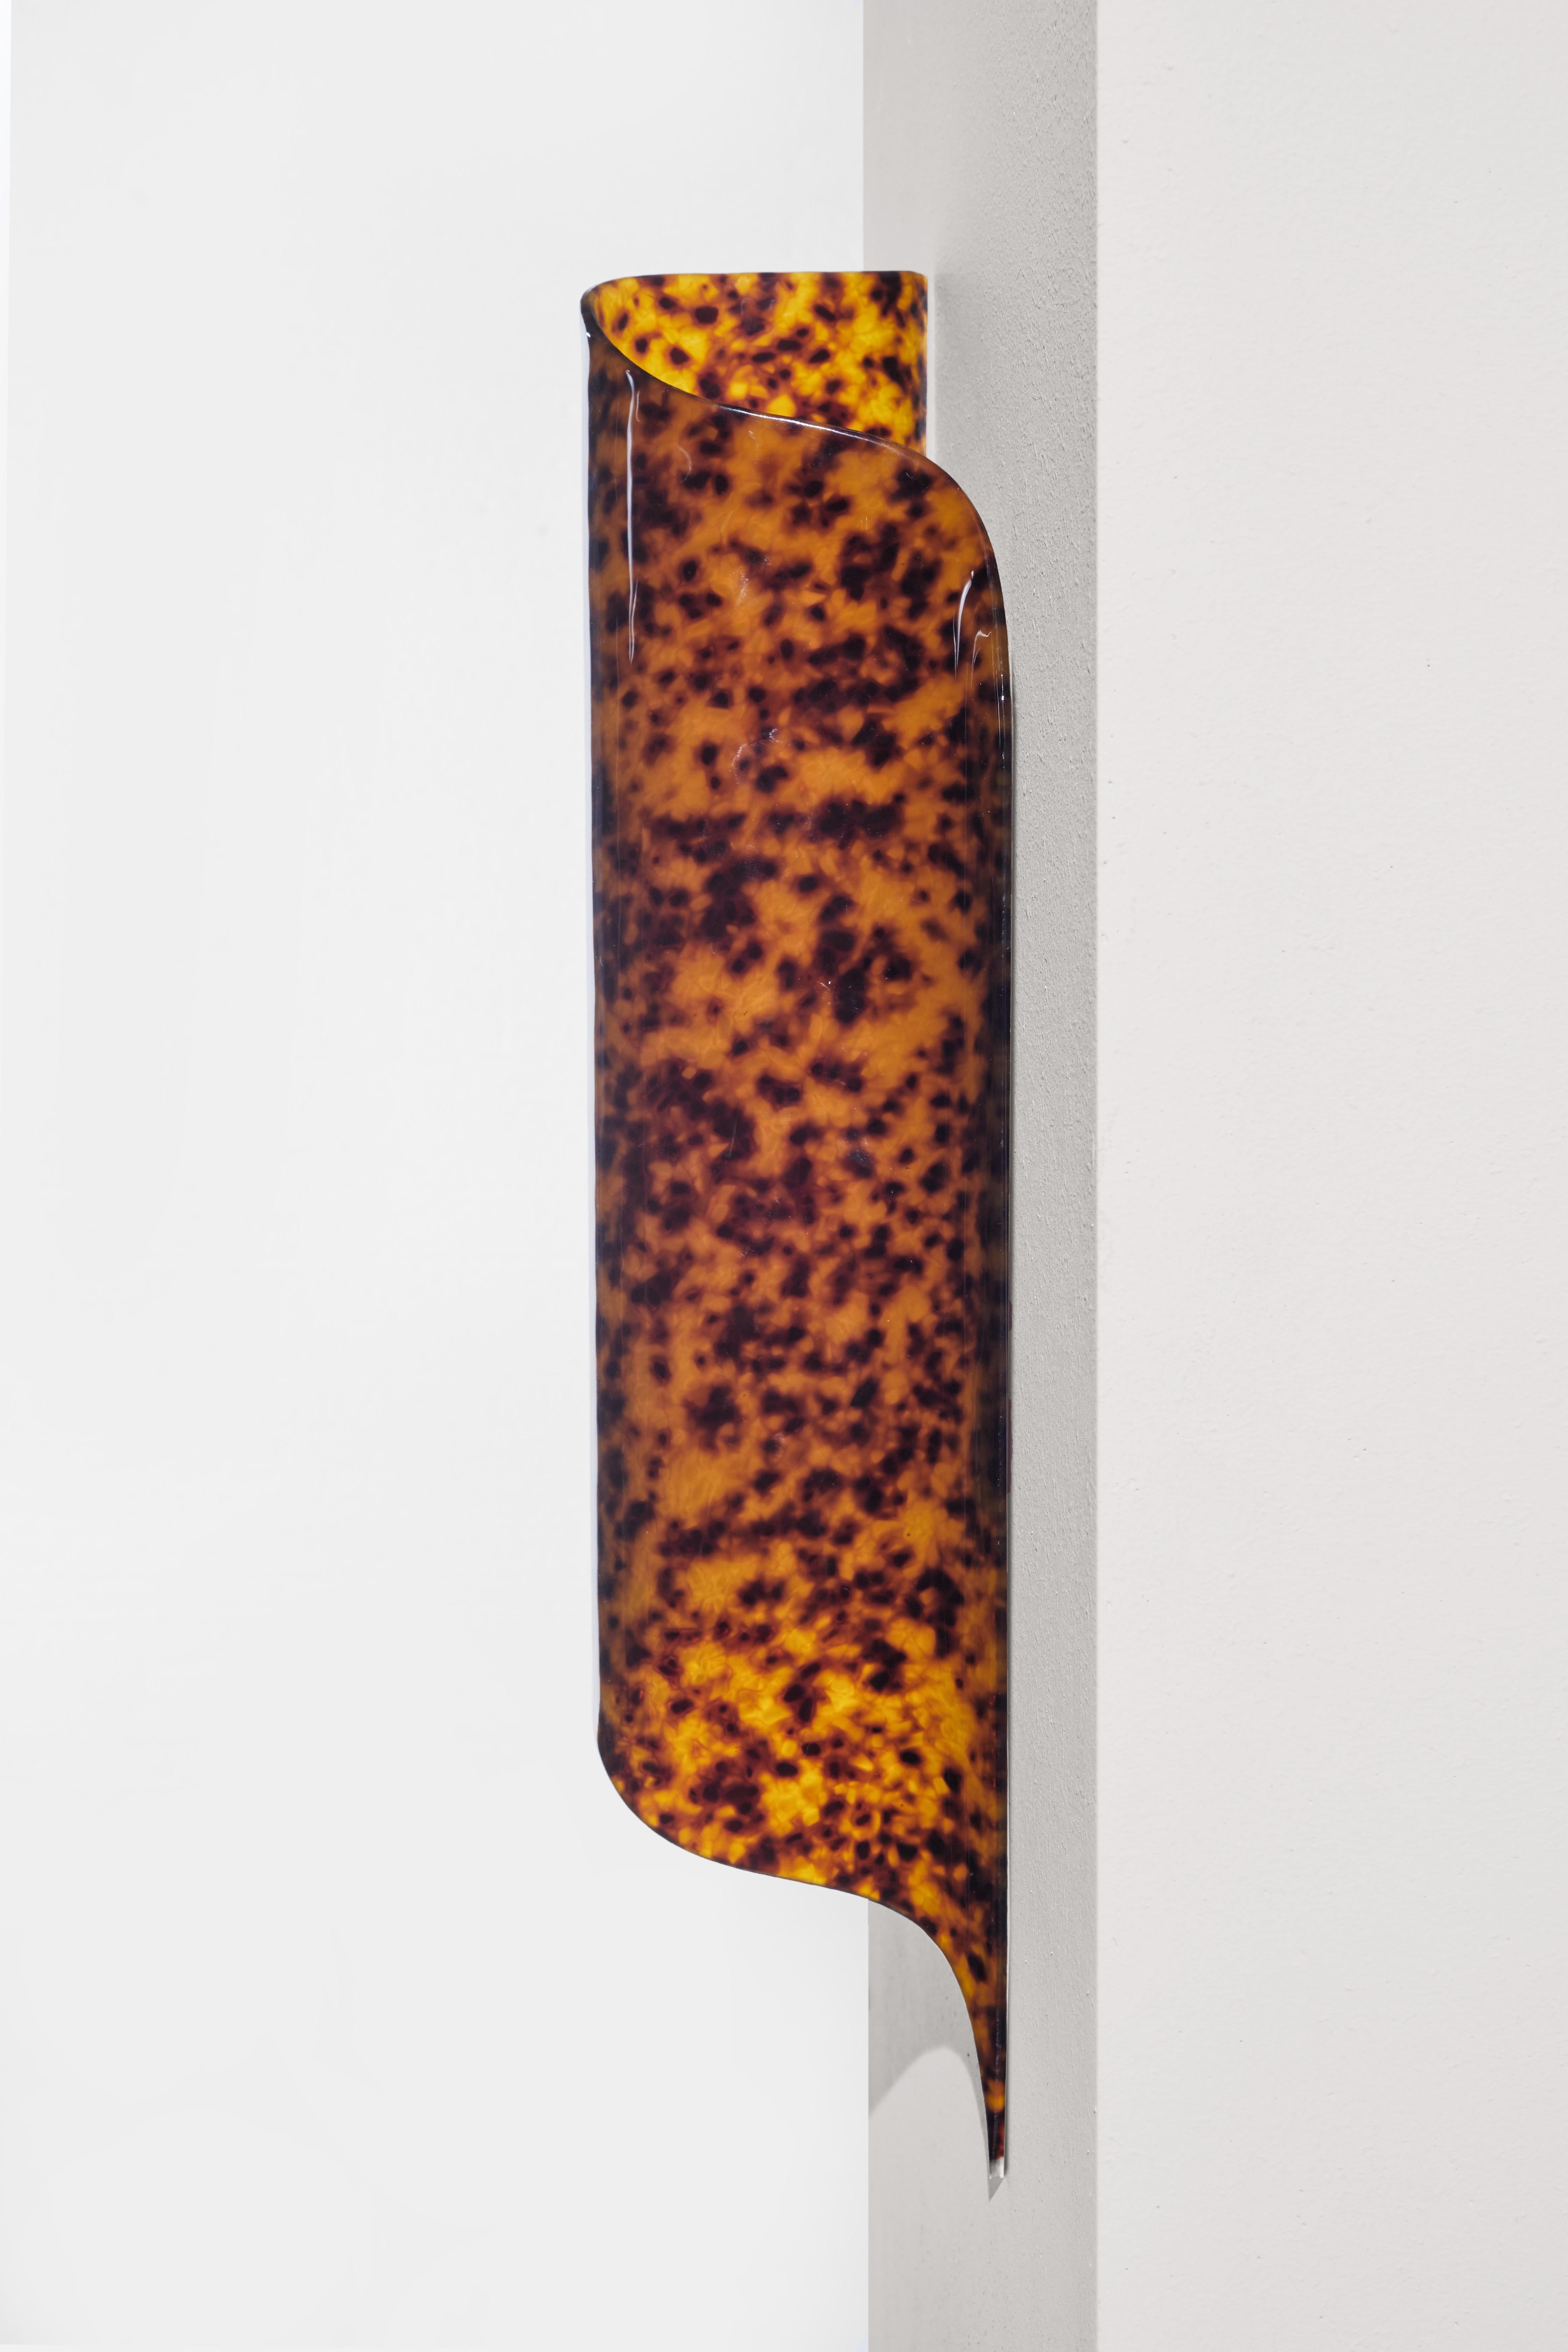 Die VOODOO Wandleuchte besitzt eine glatte, transluzente, schildpattähnliche Oberfläche aus gegossenem Acryl, die in ihrer Schönheit mit Edelsteinen vergleichbar ist. In den 1950er Jahren ein begehrtes Modematerial, erlebt die Ästhetik von